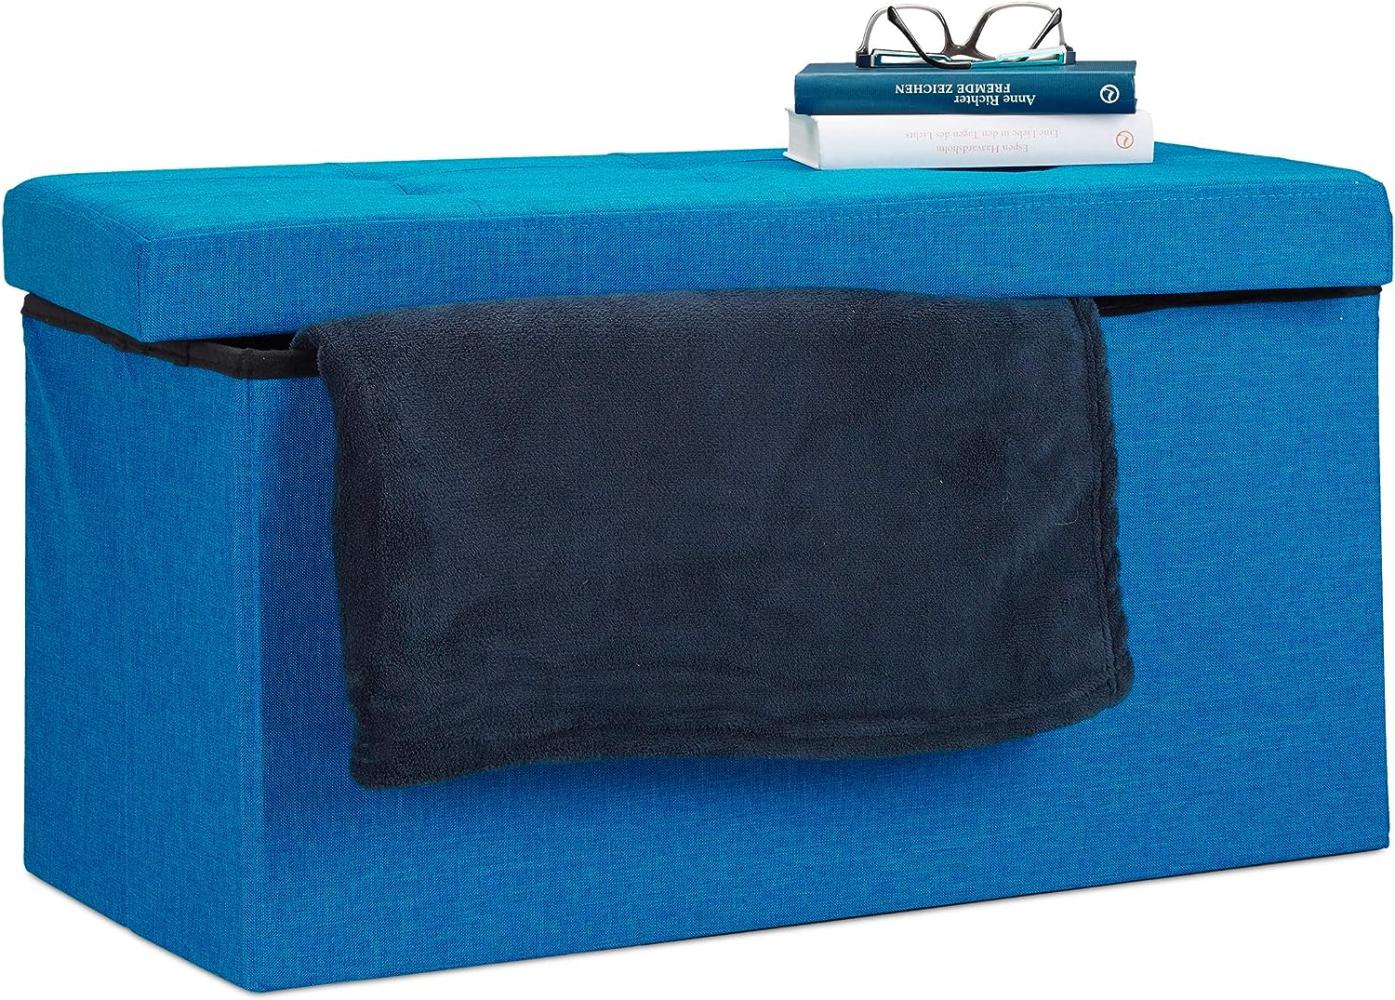 Relaxdays Faltbare Sitzbank XL, mit Stauraum, Sitzcube mit Fußablage, Sitzwürfel als Aufbewahrungsbox, 38x76x38 cm, blau Bild 1